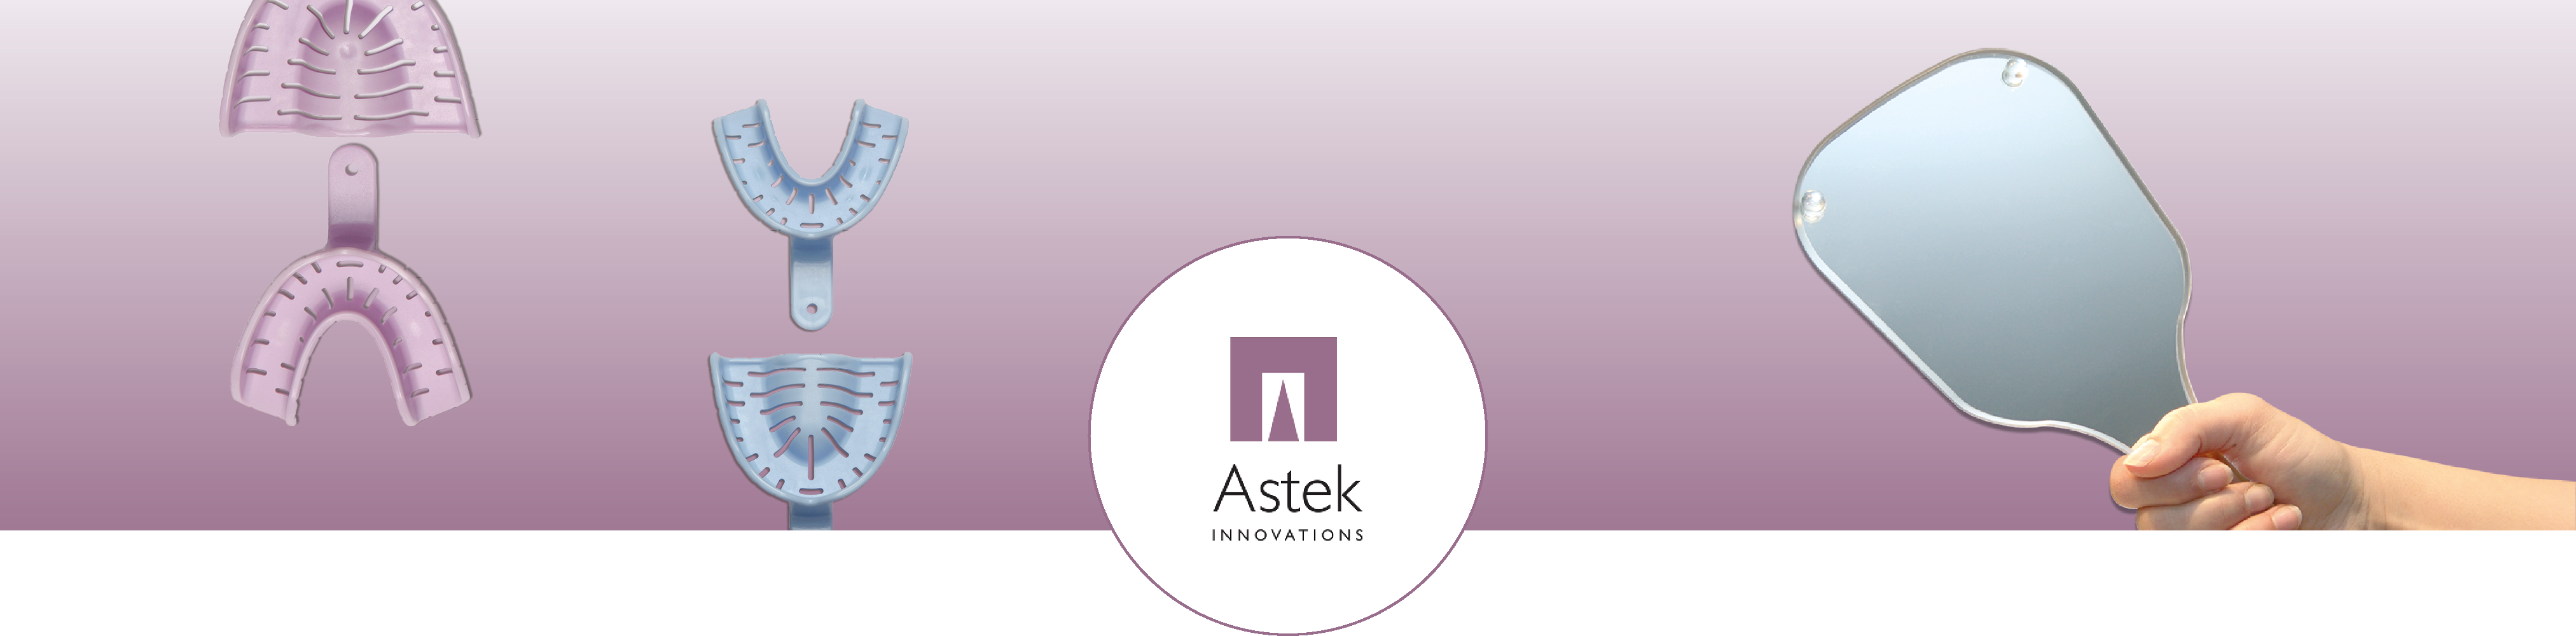 banner_astek